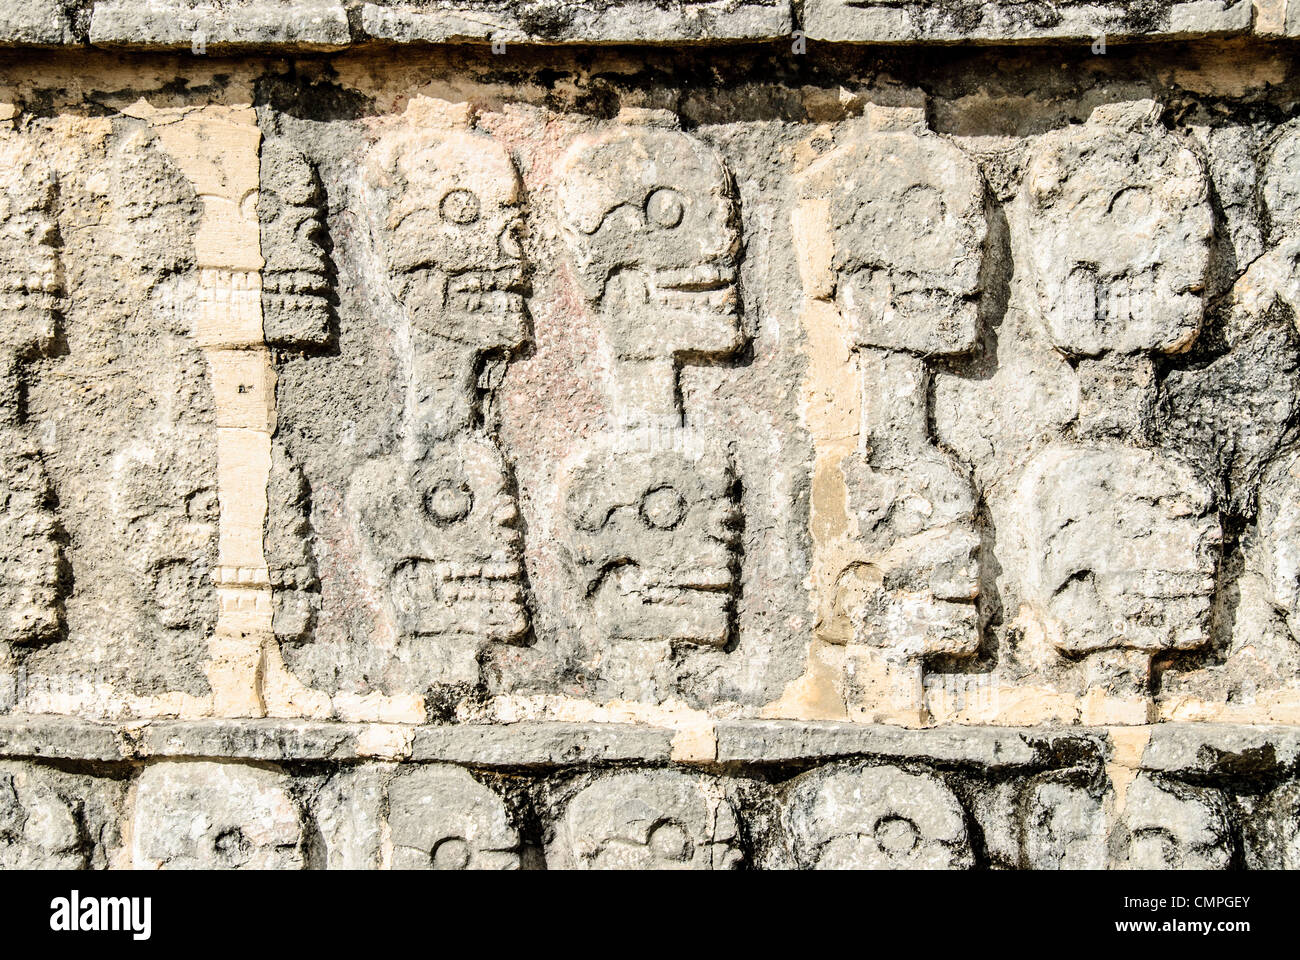 CHICHEN ITZA, Mexique - l'inscription de crânes sculptés dans la pierre à Chichen Itza, au Mexique. Banque D'Images